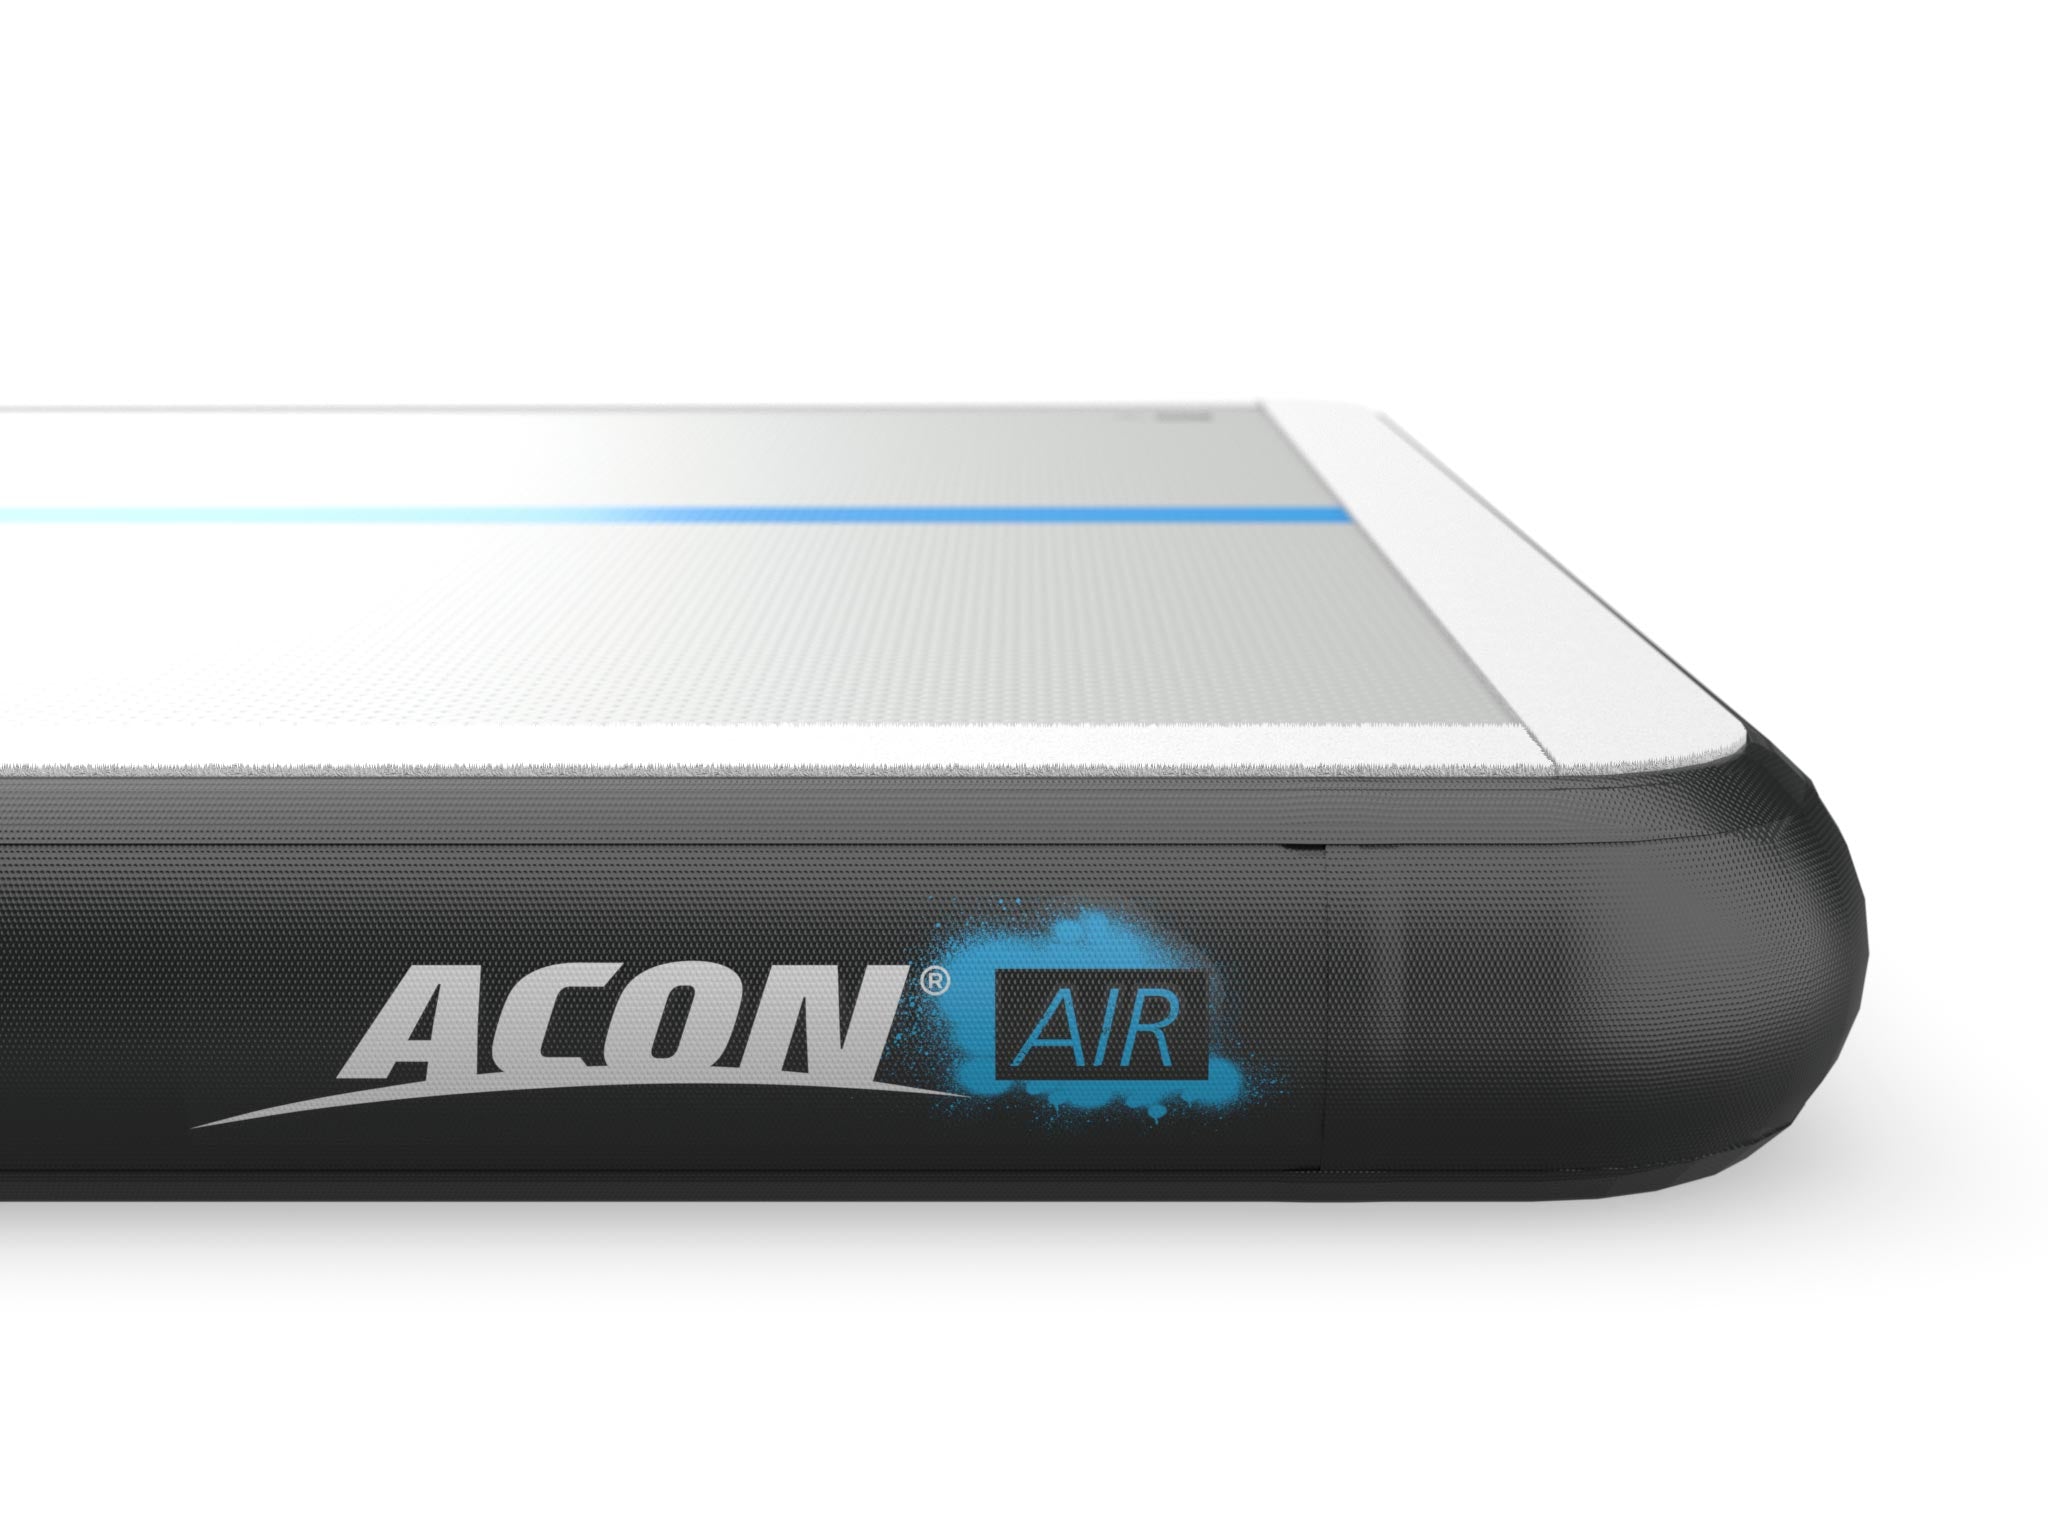 ACON AirTrack detail - acon24.com - Details ACON logo